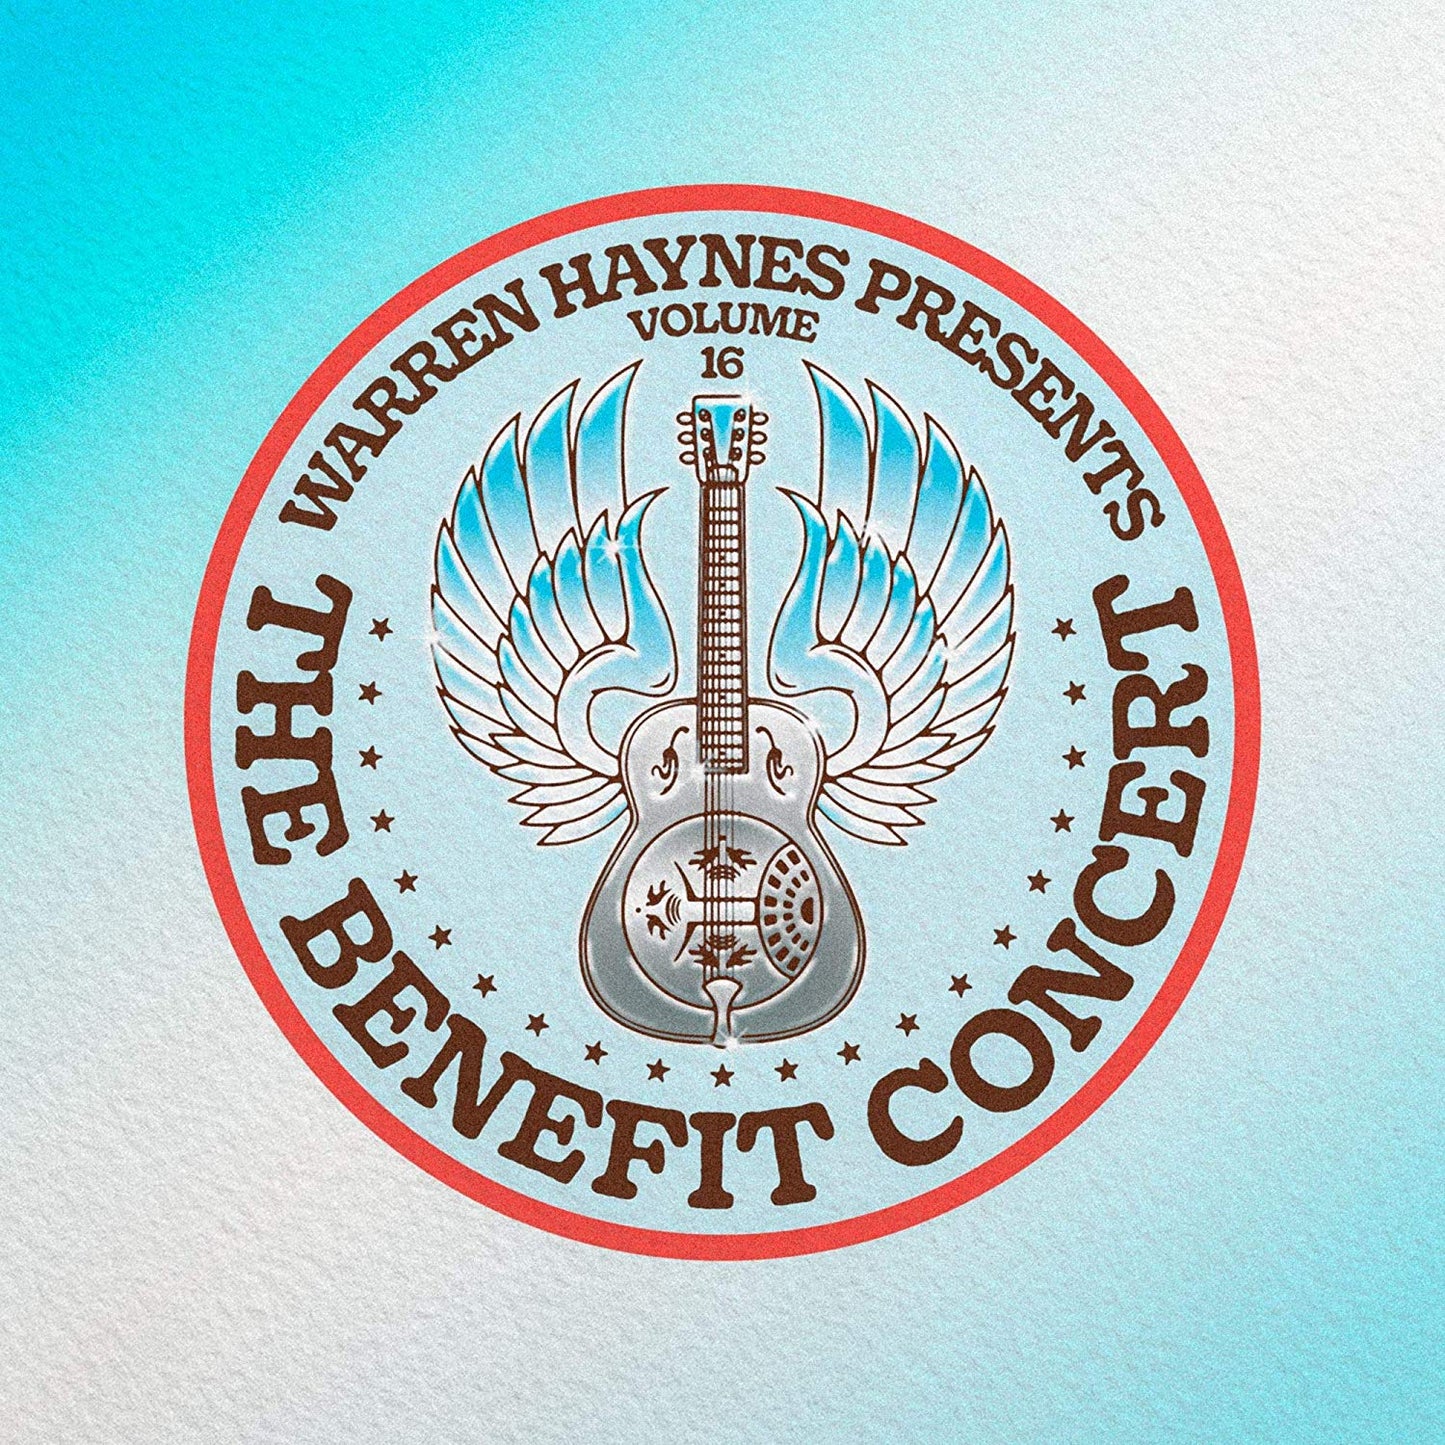 Warren Haynes Presents The Benefit Concert Vol. 16 - CD/DVD